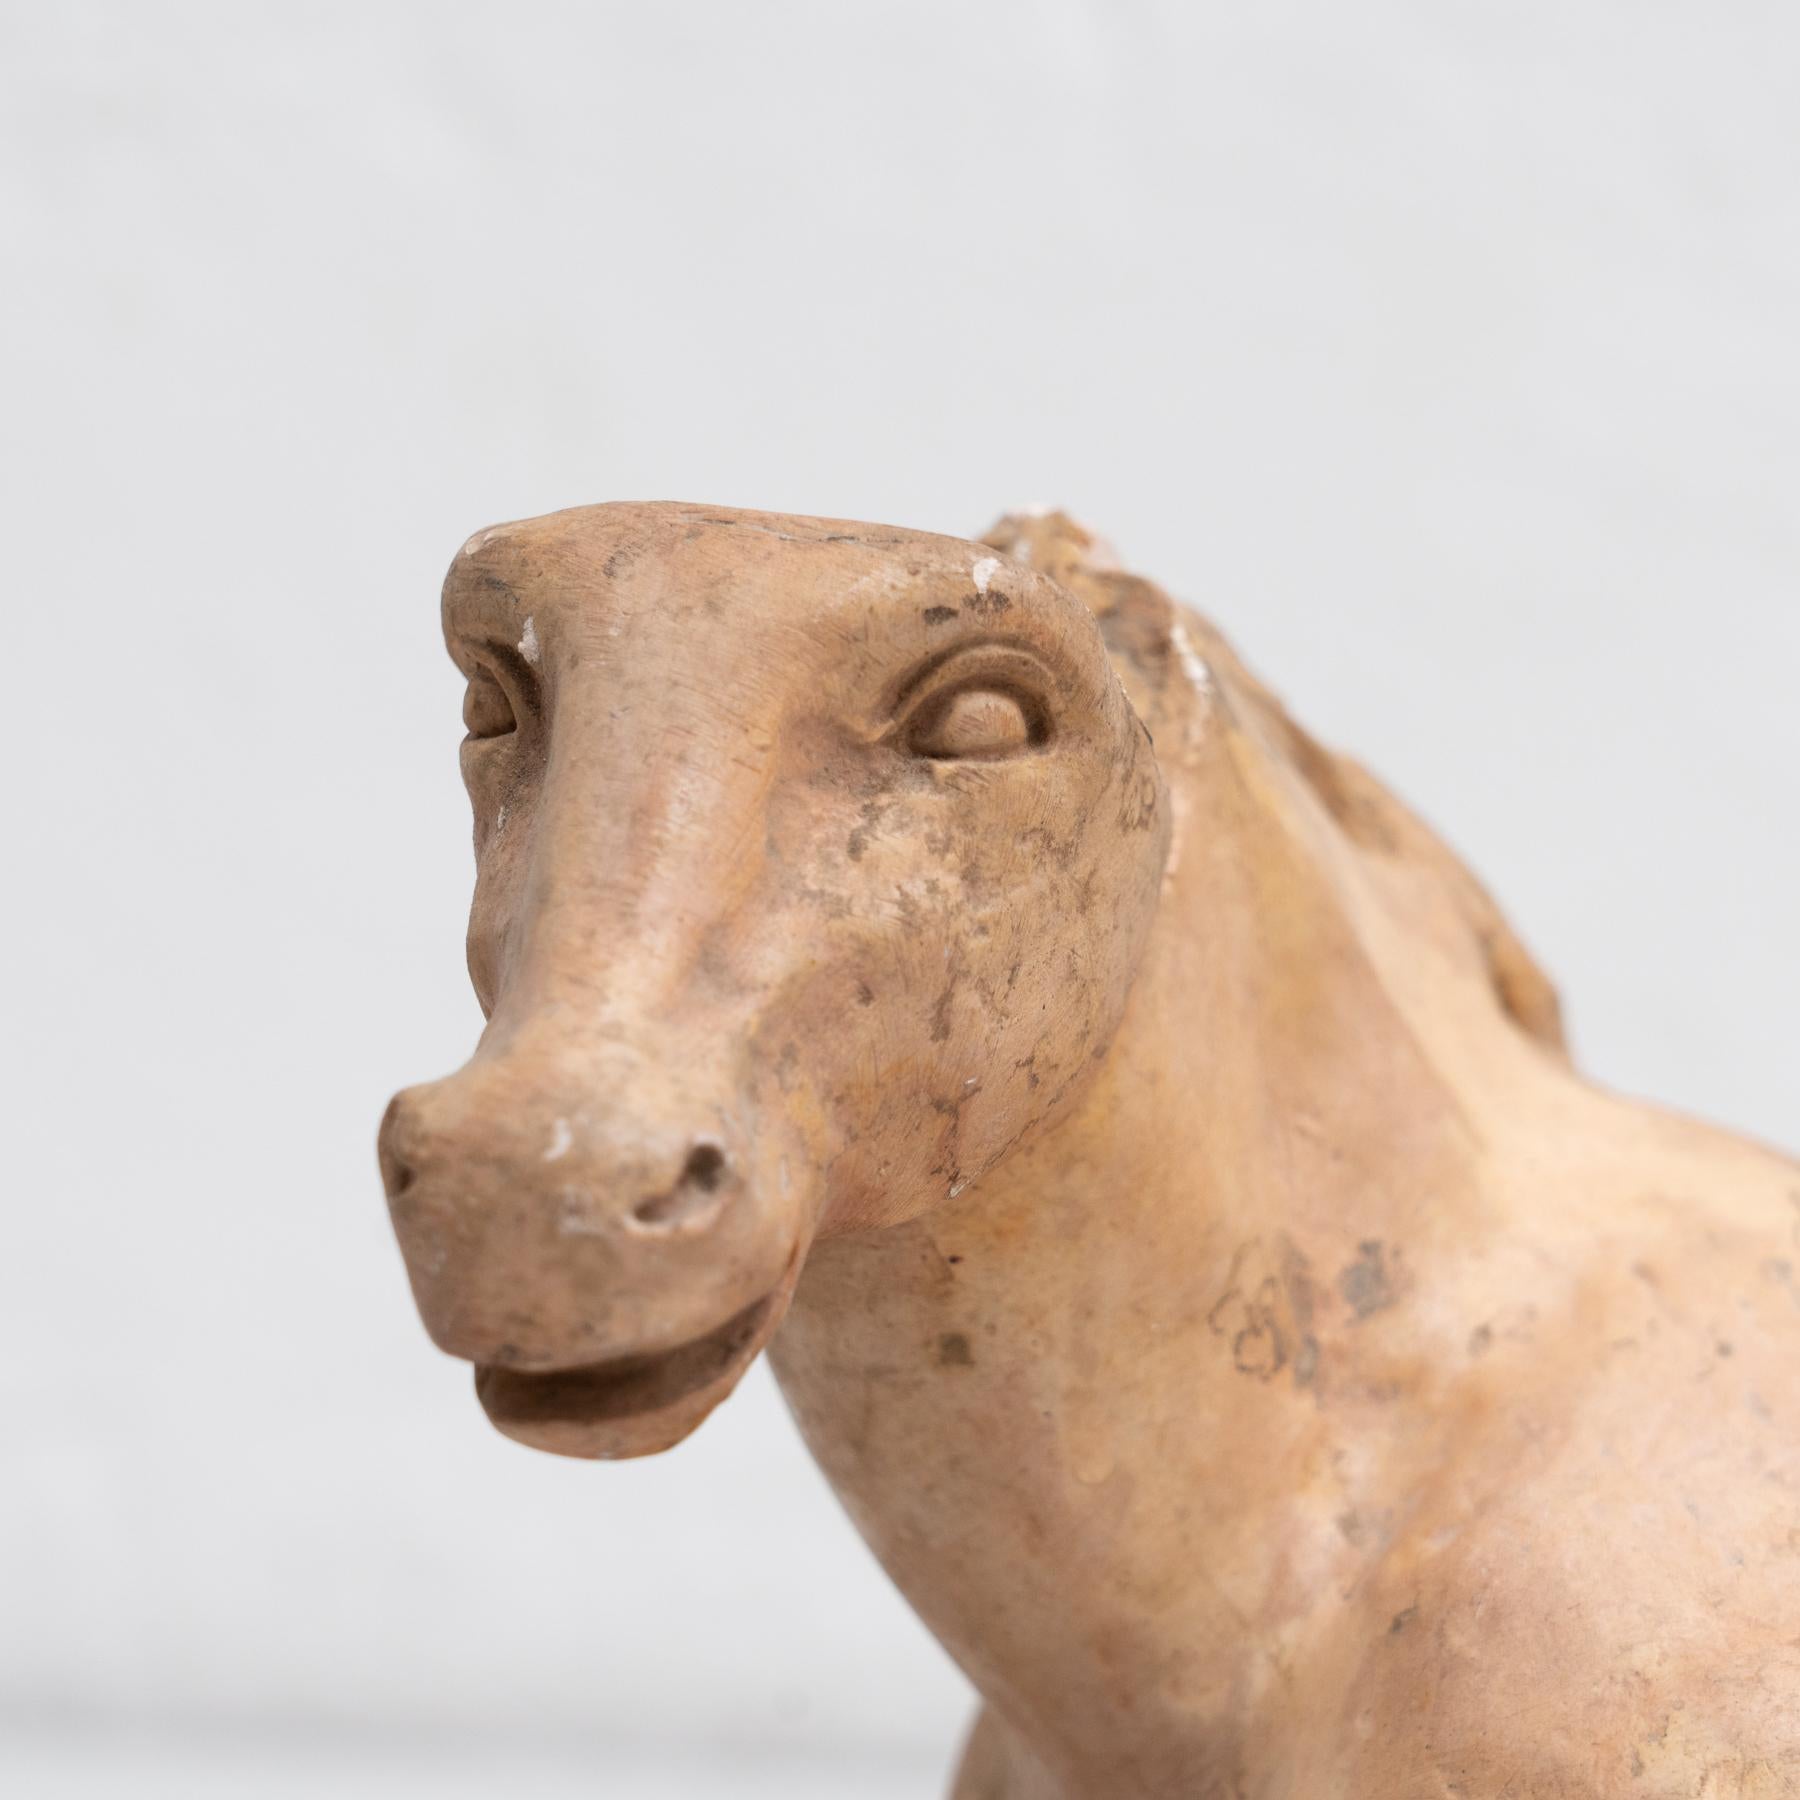 Traditionelle Gipsfigur eines Pferdes.

Hergestellt in einem traditionellen katalanischen Atelier in Olot, Spanien, um 1950.

Originaler Zustand mit geringen alters- und gebrauchsbedingten Abnutzungserscheinungen, der eine schöne Patina